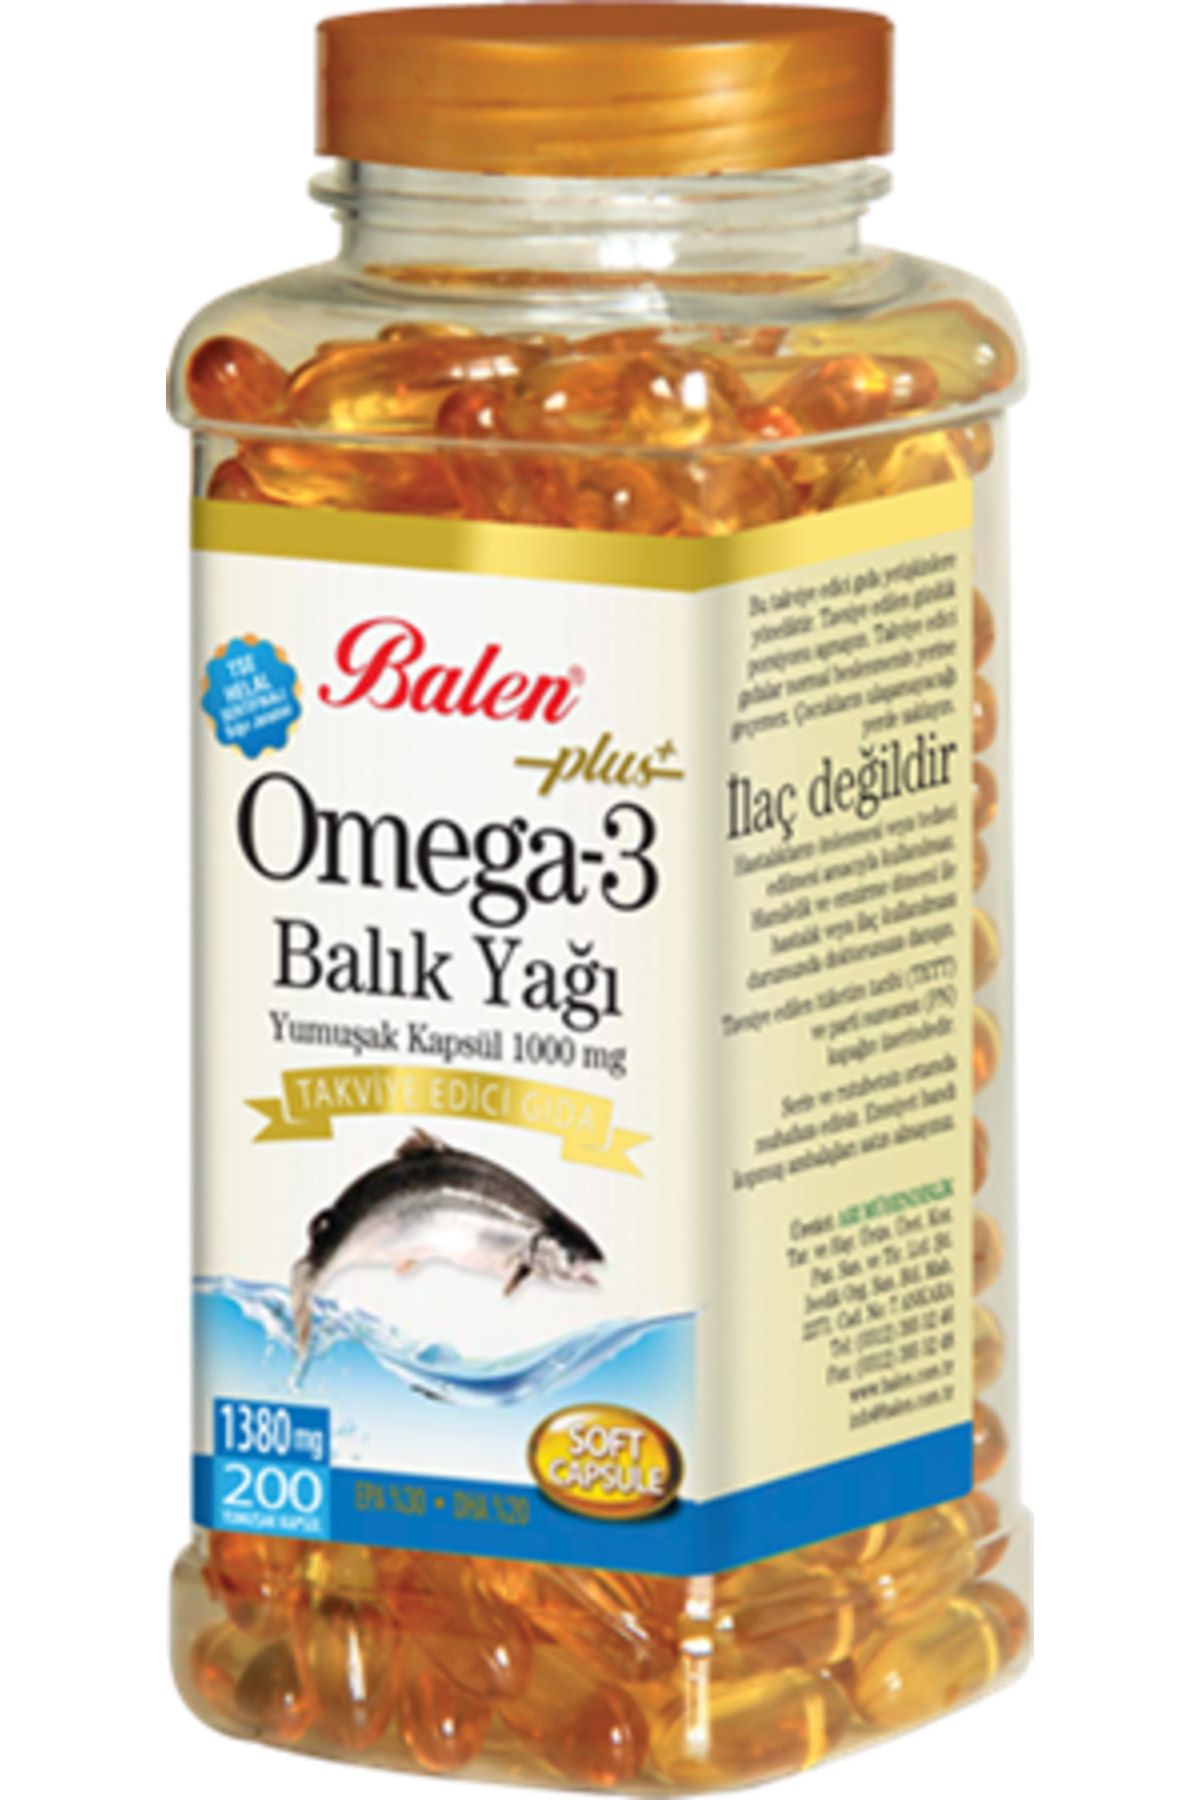 Balen Omega 3 Balık Yağı Yumuşak Kapsül 1380 Mg*200